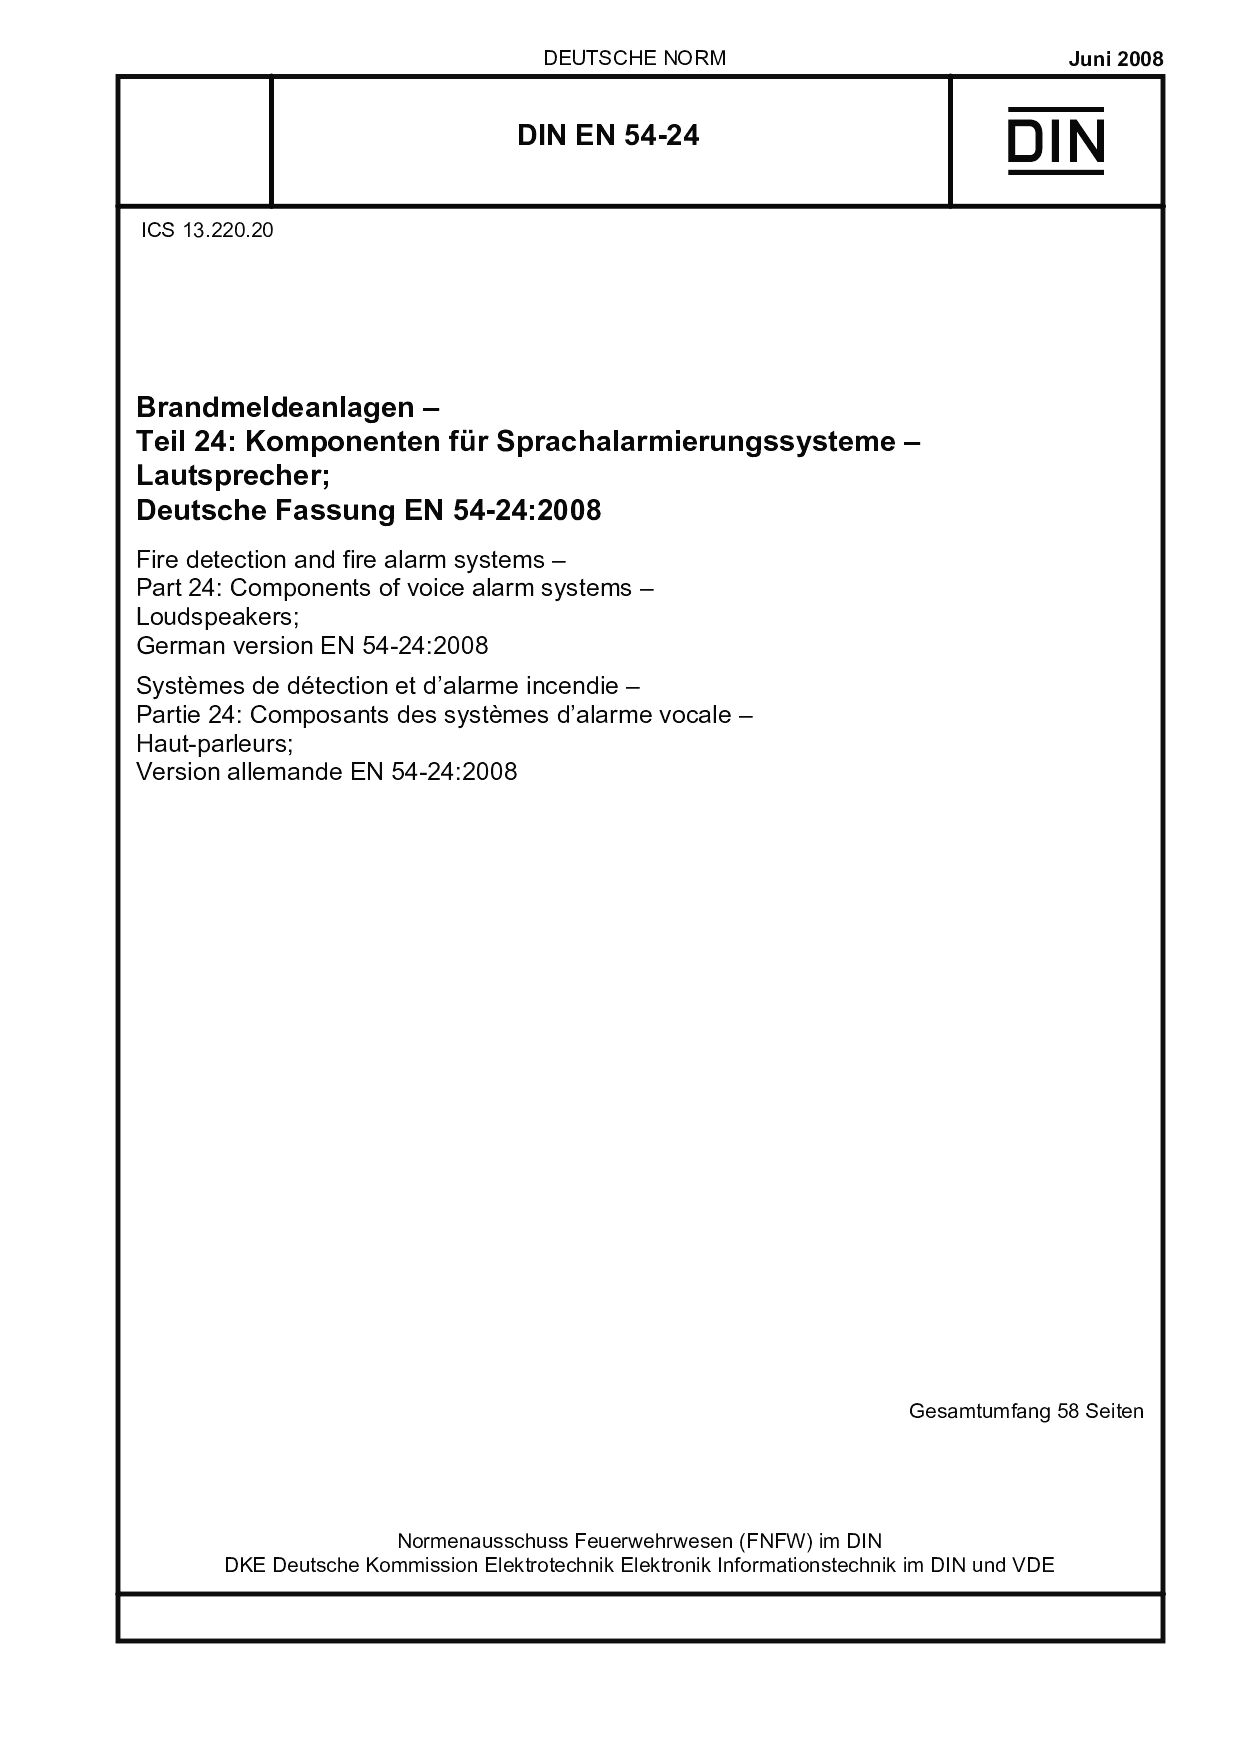 DIN EN 54-24:2008封面图